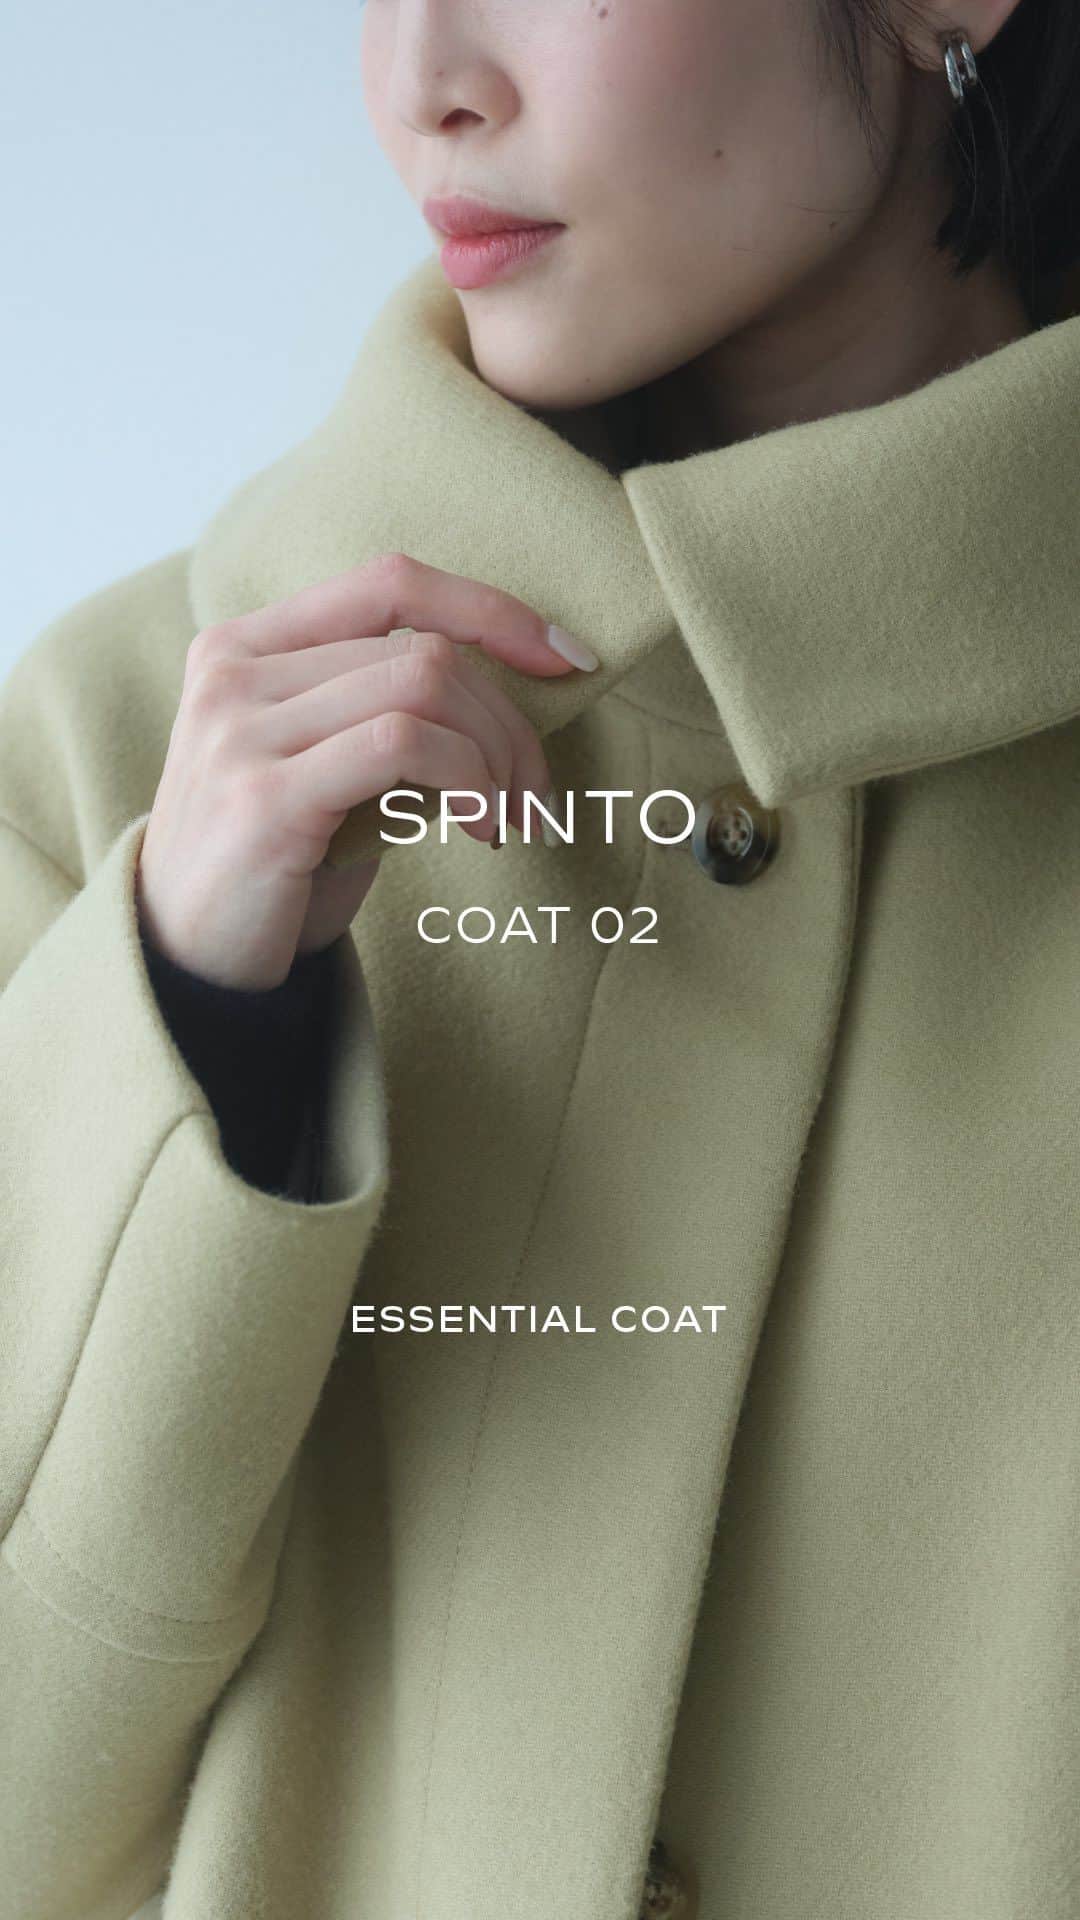 green label relaxingのインスタグラム：「「SPINTO 作り手の思いとともに、毎日を紡ぐ１着」  自分の好みで選べるコート、好きな服に似合うコート。SPINTO（スピント）は、デザインと色のバリエーションが豊富なシリーズ。 生地の設計から工夫を重ね、比較的毛玉になりにくい素材を使用しているのもポイントです✨ クリーンな印象のビッグカラーコートは、さっと羽織れる軽やかさ。衿の留め方で印象を変えられて、どんな気分にもフィット。毎日の相棒にぴったりです♡   【商品詳細】 🏷ダブルテーラード コート ¥39,600(税込)   No.36251262074   🏷ビッグカラー コート ¥35,200(税込) No.36251992048       🏷スタンドカラー コート ¥35,200(税込) No.36251992049       🏷ロングダッフル コート ¥35,200(税込) No.36251992053     🏷ショートダッフル コート ¥29,700(税込) No.36251992050     ーーーーーーーーーー   ESSENTIAL COAT "ずっと使えるいいもの"を   「あの冬は、お気に入りのコートで過ごしたね」 「あのコートを着て、ここにいたね」。   1着のコートには、そんな風に記憶に残り、時を重ねてゆく力があります。この冬、グリーンレーベル リラクシングがお届けするのは、何年先も、毎日一緒に過ごせる、エッセンシャルなウールコート。つくりの良さにこだわり、日常に寄り添うデザインに心を込めました。   暖かな思い出を刻みながら、愛着を持って着られる1着に、出会ってみませんか。     ーーーーーーーーーー     #greenlabelrelaxing #グリーンレーベルリラクシング #ESSENTIALCOAT #ワンオブマイン #SPINTOコート #SENTDALEWOOL   #アウター #コート #アウターコーデ #コートコーデ #ショートコート  #ロングコート #ダッフルコート #チェースターコート #スタンドカラーコート #ビッグカラーコート #カジュアルコーデ #大人カジュアル #きれいめカジュアル #きれいめコーデ #冬コート  #冬アウター #お出かけコーデ #デートコーデ #大人コーデ #ワードローブ」